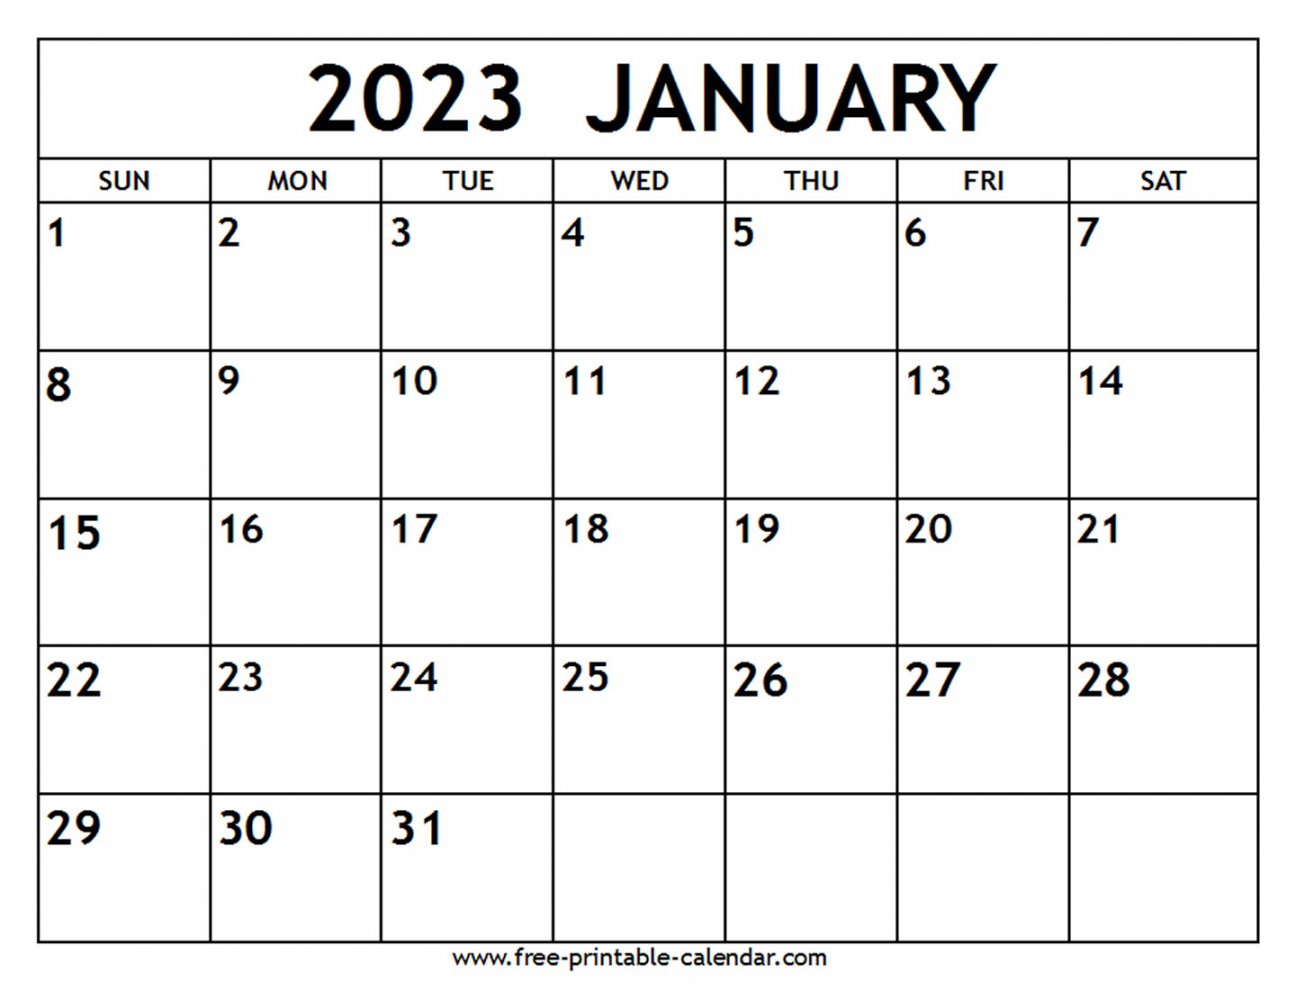 January 2023 Free Printable Calendar - Printable - January  Calendar - Free-printable-calendar